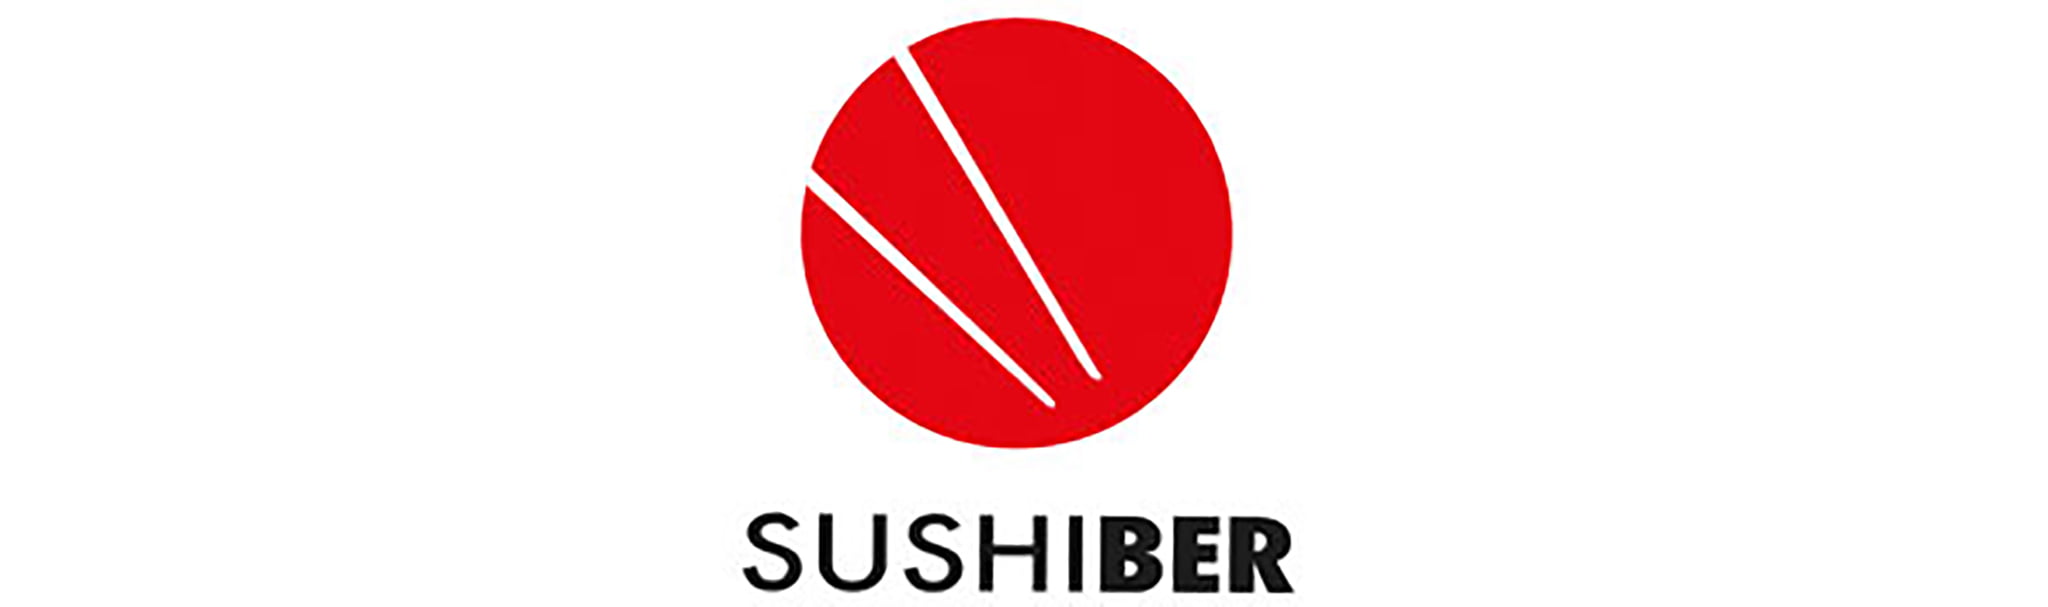 Logotipo Sushiber